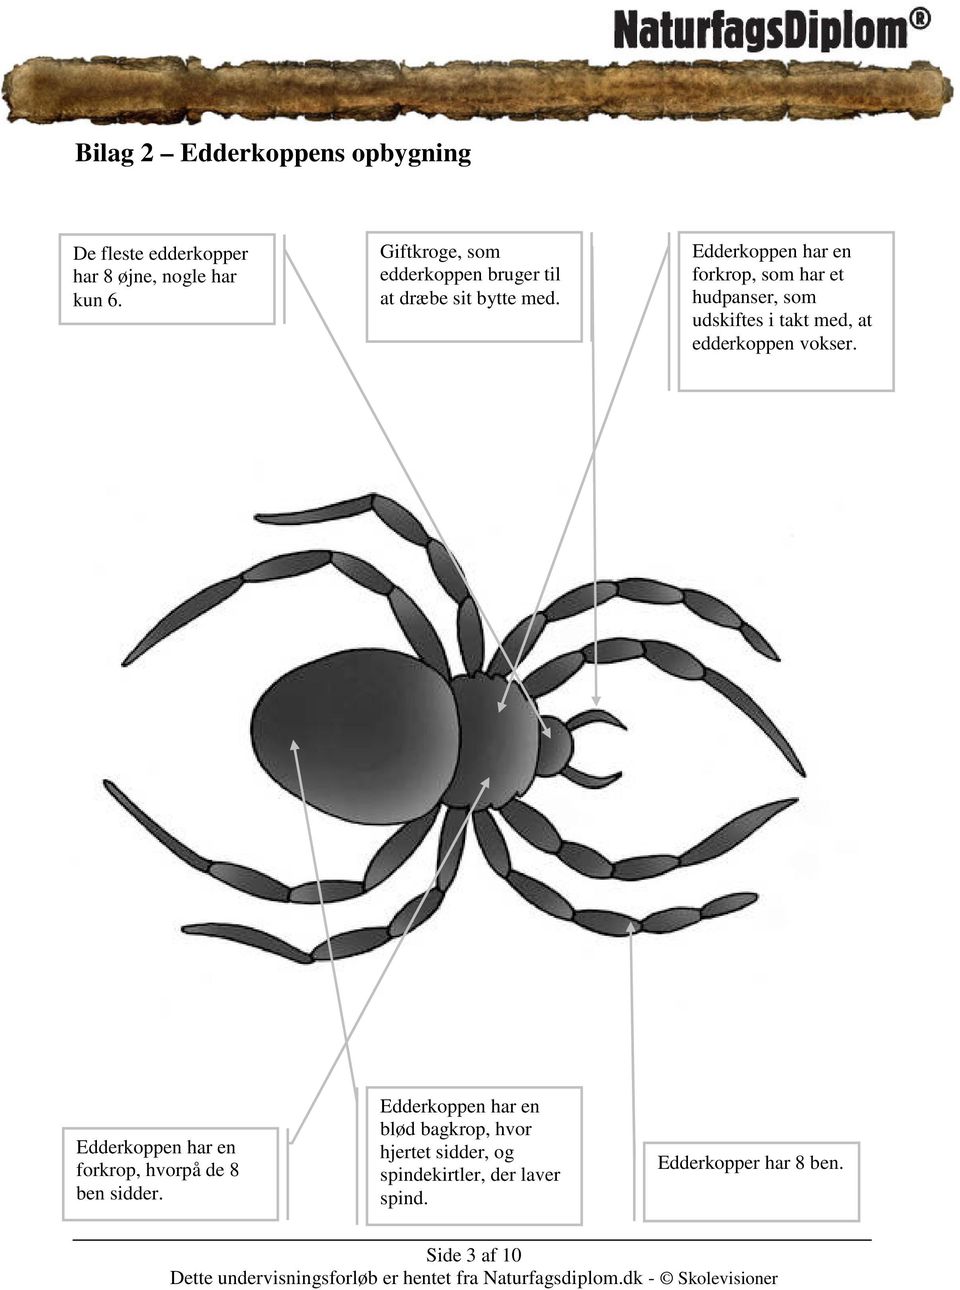 Edderkoppen har en forkrop, som har et hudpanser, som udskiftes i takt med, at edderkoppen vokser.